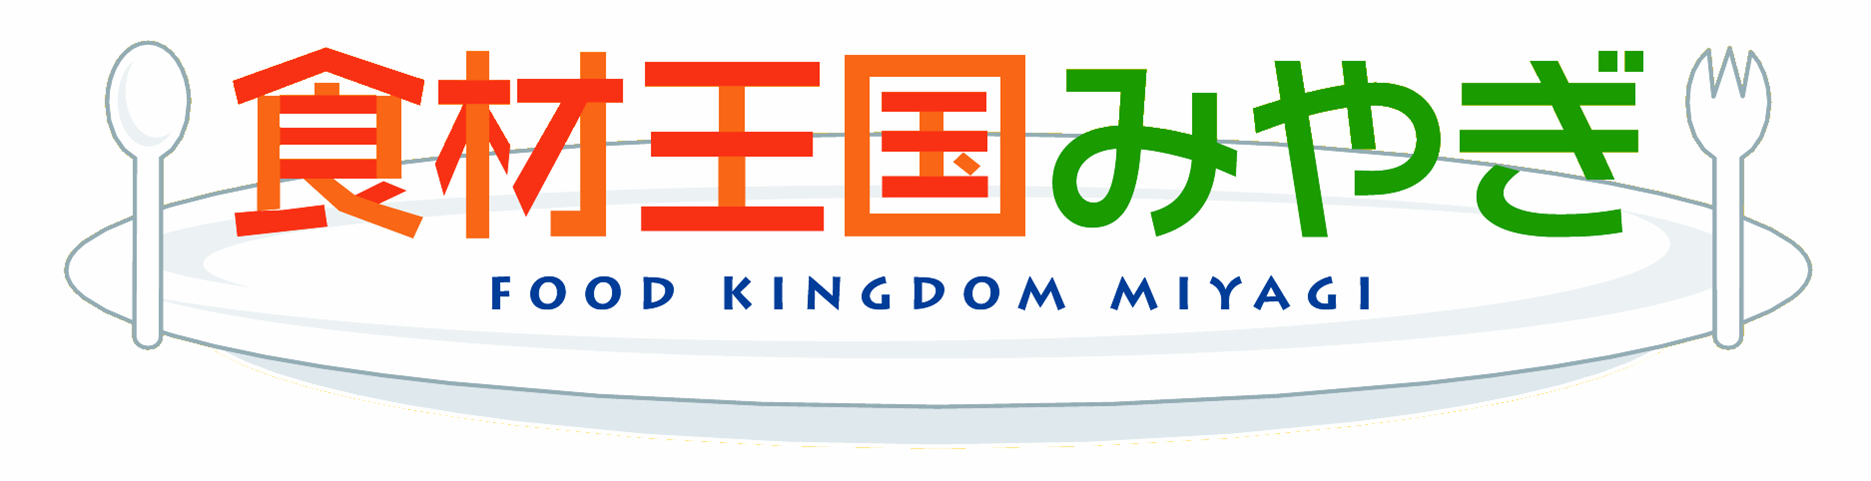 食材王国ロゴ2